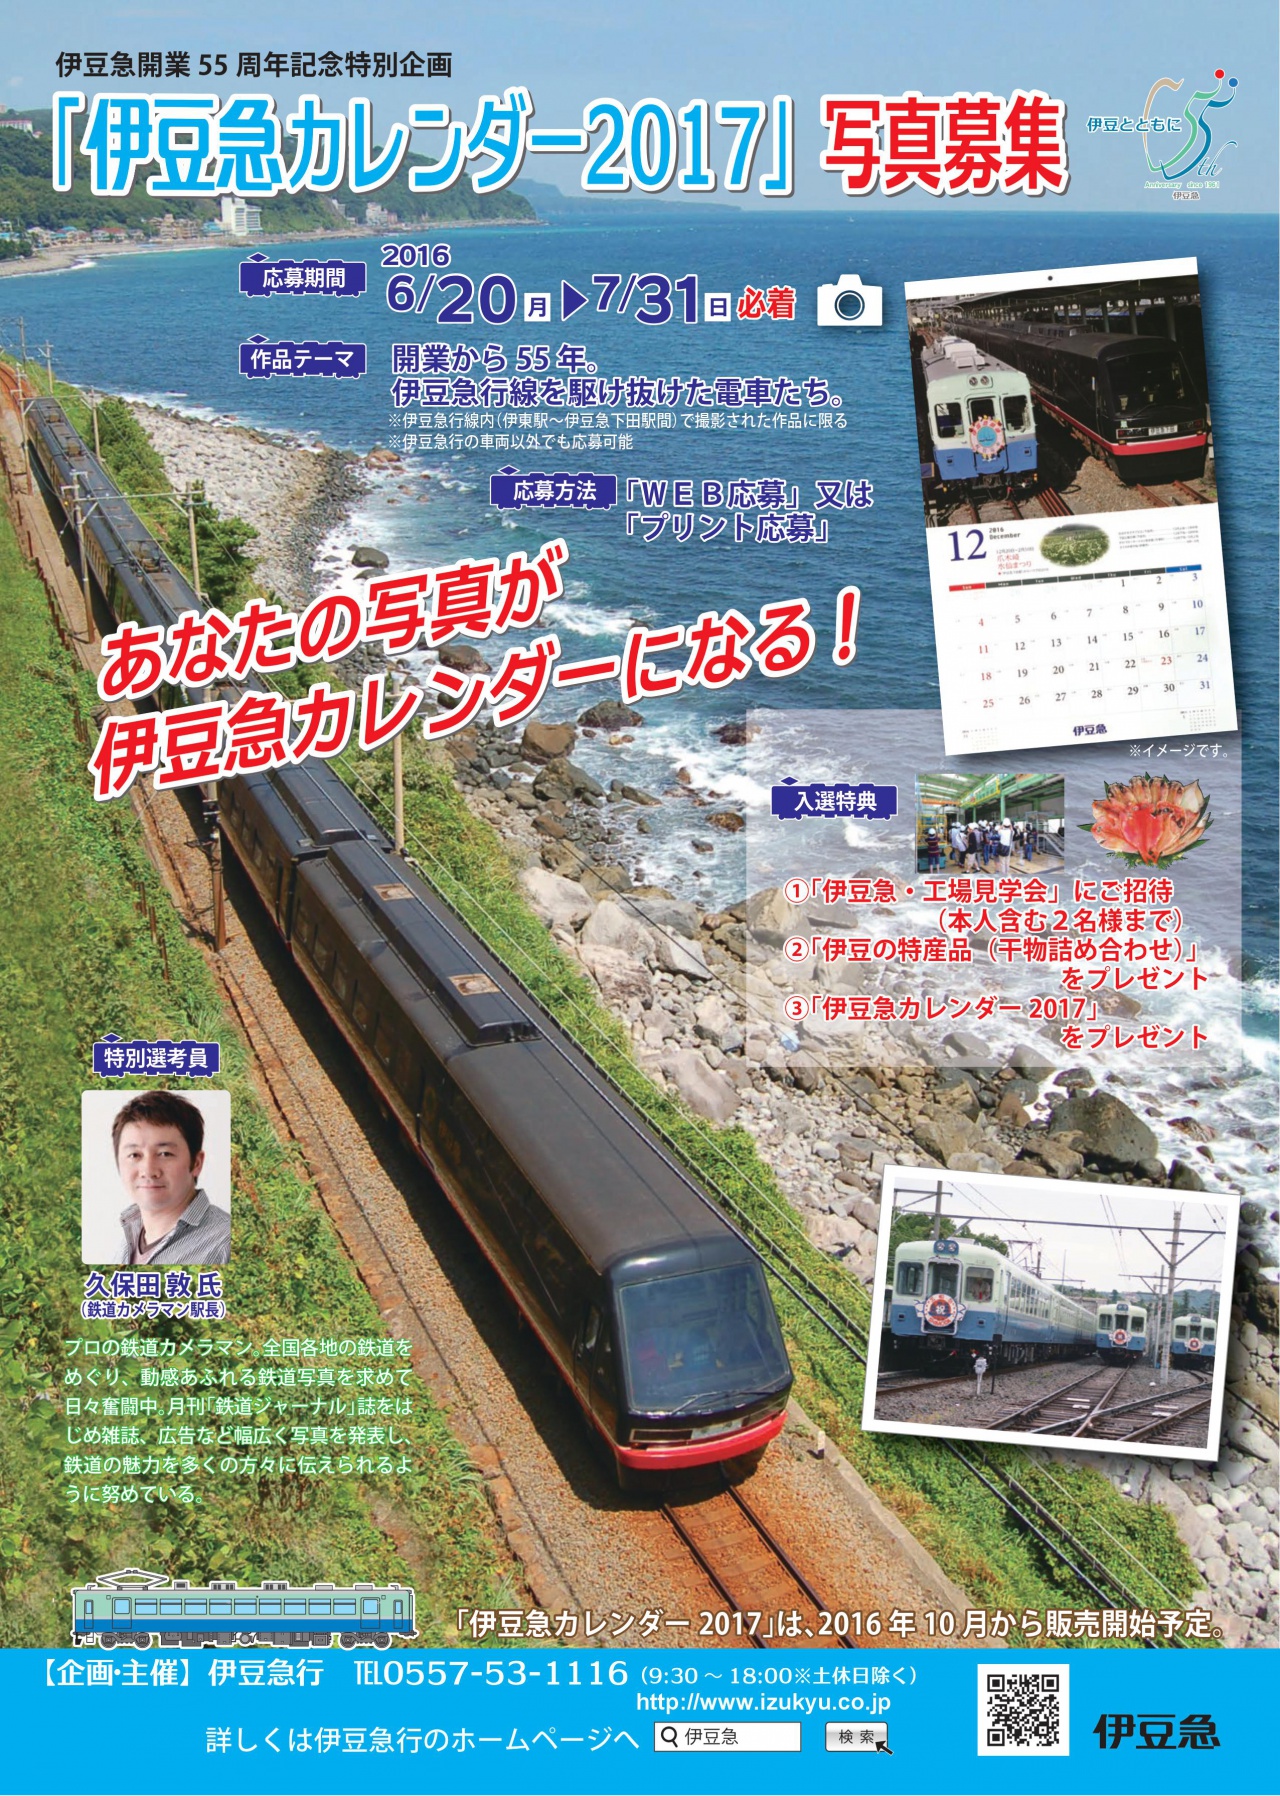 伊豆急行 伊豆急カレンダー17 写真を一般募集 鉄道ニュース 鉄道新聞